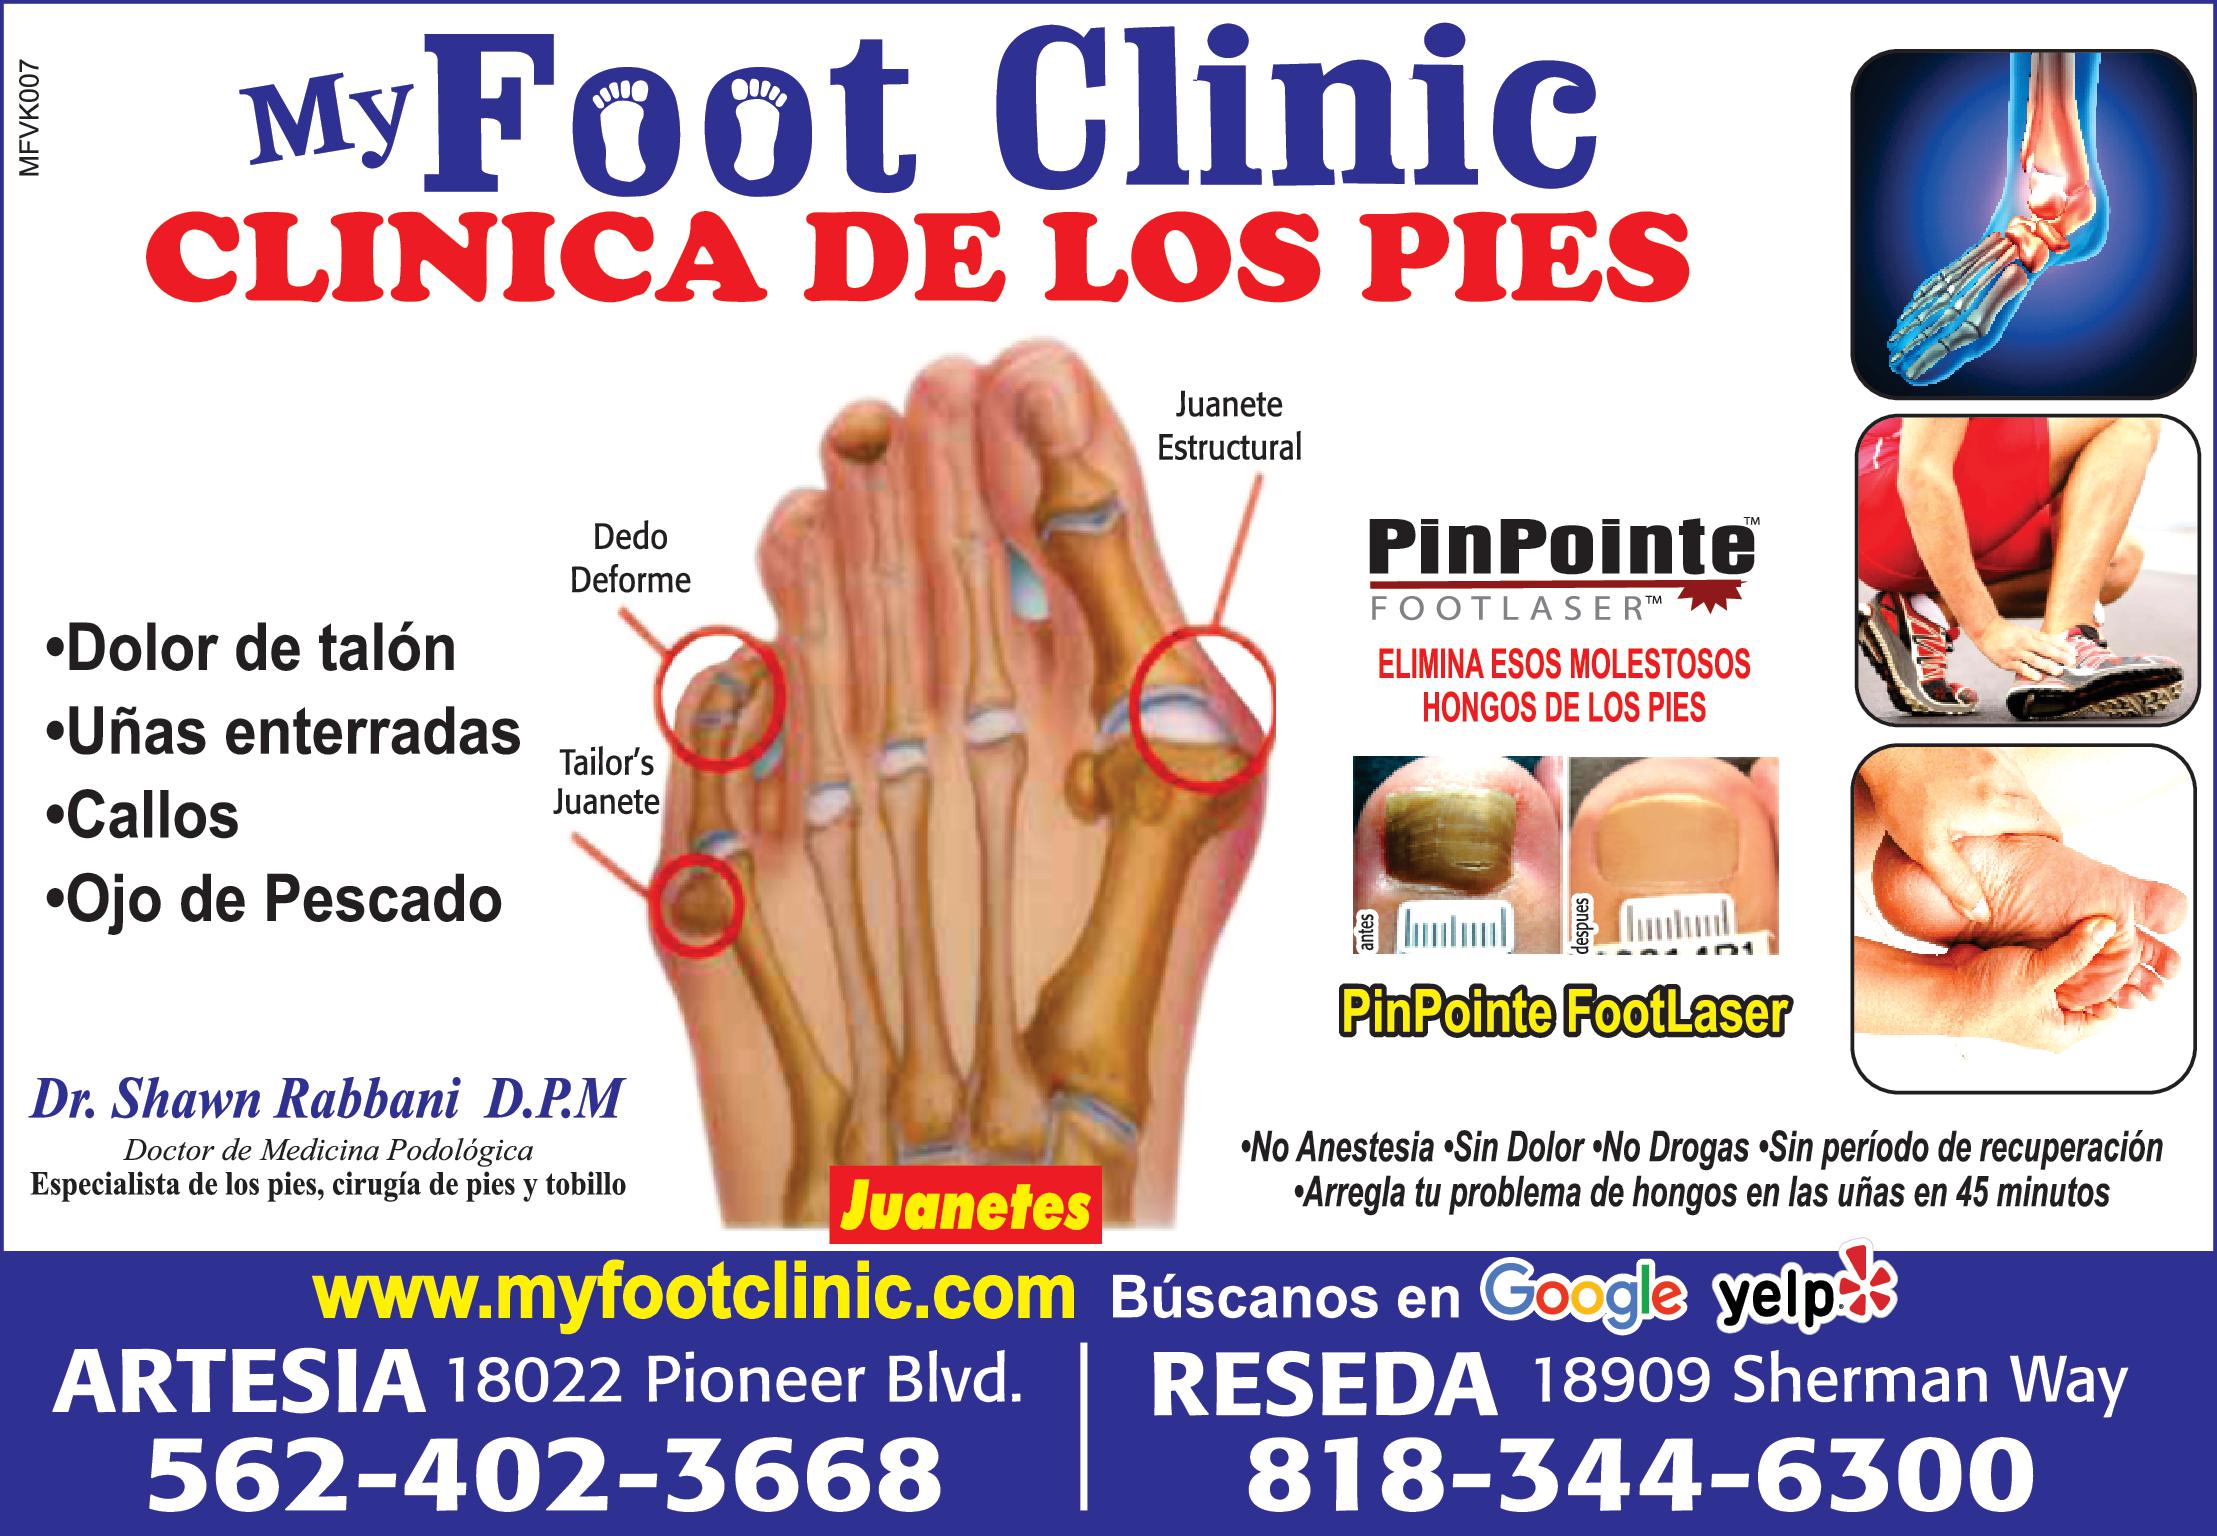 MFVK007 My Foot Clinic CLINICA DE LOS PIES Dolor de talón Dedo Deforme Uñas enterradas Callos Ojo de Pescado Tailor